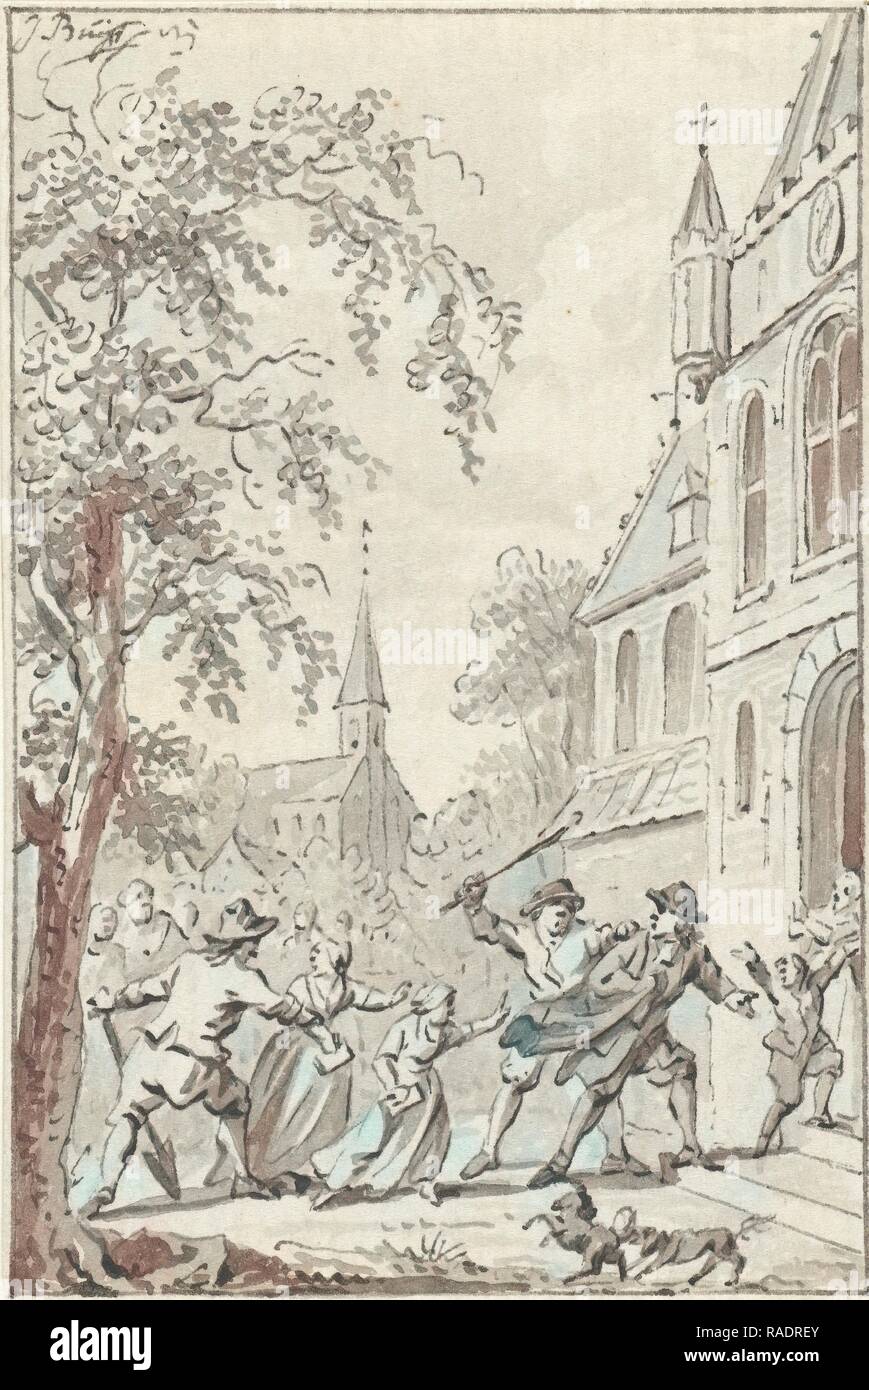 Voies de près de Vaals réformée des Pays-Bas, 1764, Jacobus Buys, 1791 - 179. Repensé par Gibon. L'art classique avec repensé Banque D'Images